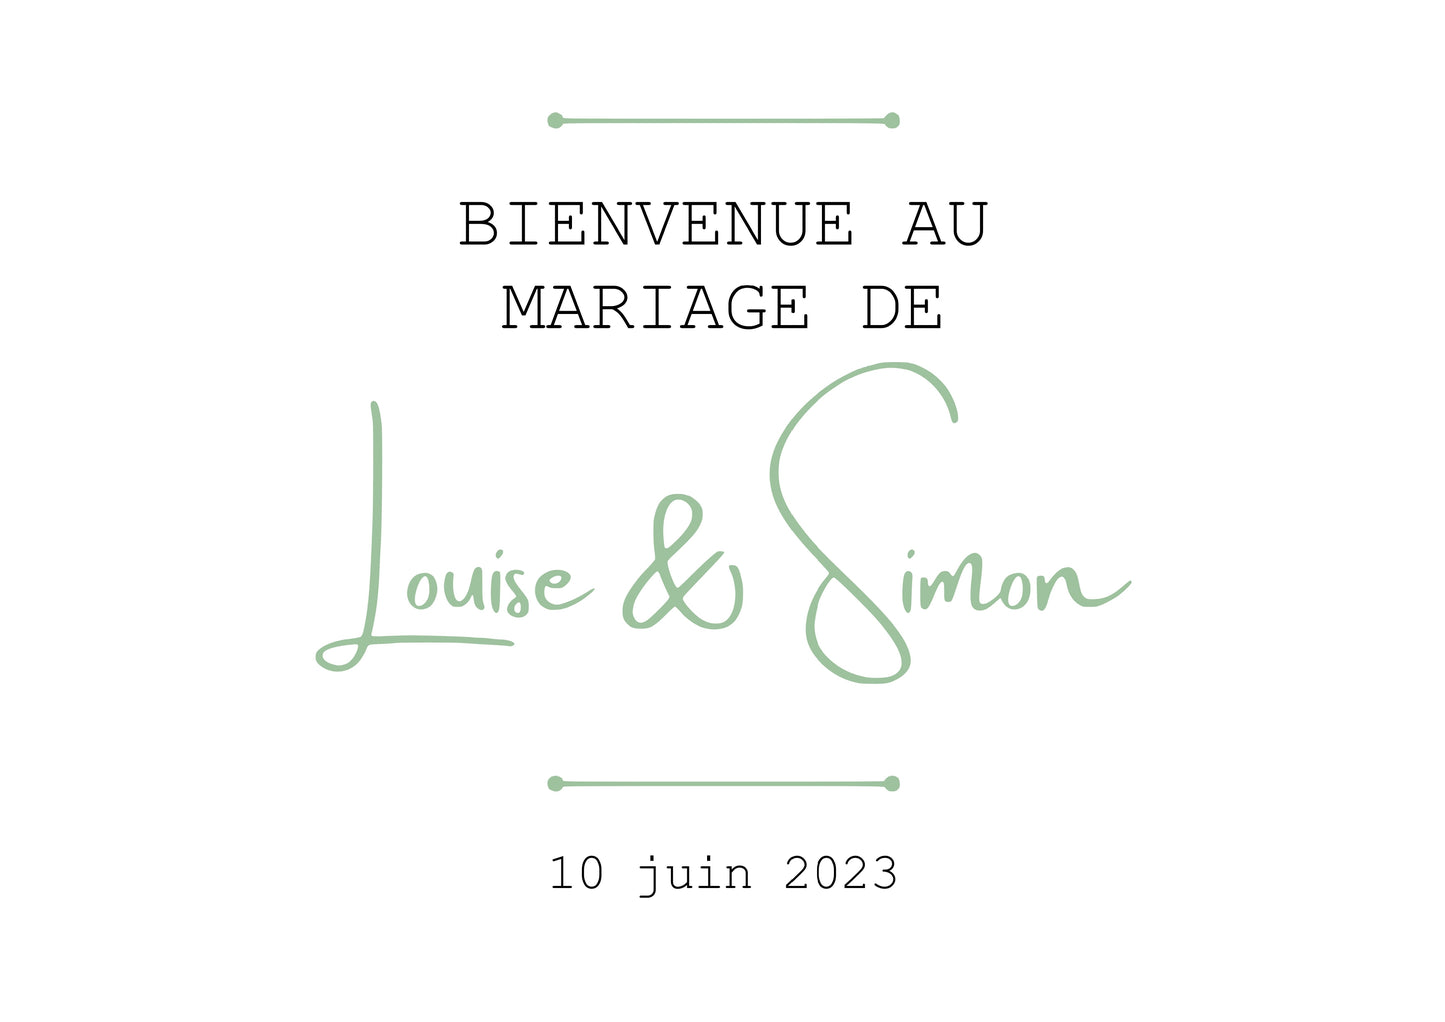 Affiche à imprimer "BIENVENUE AU MARIAGE DE" à personnaliser